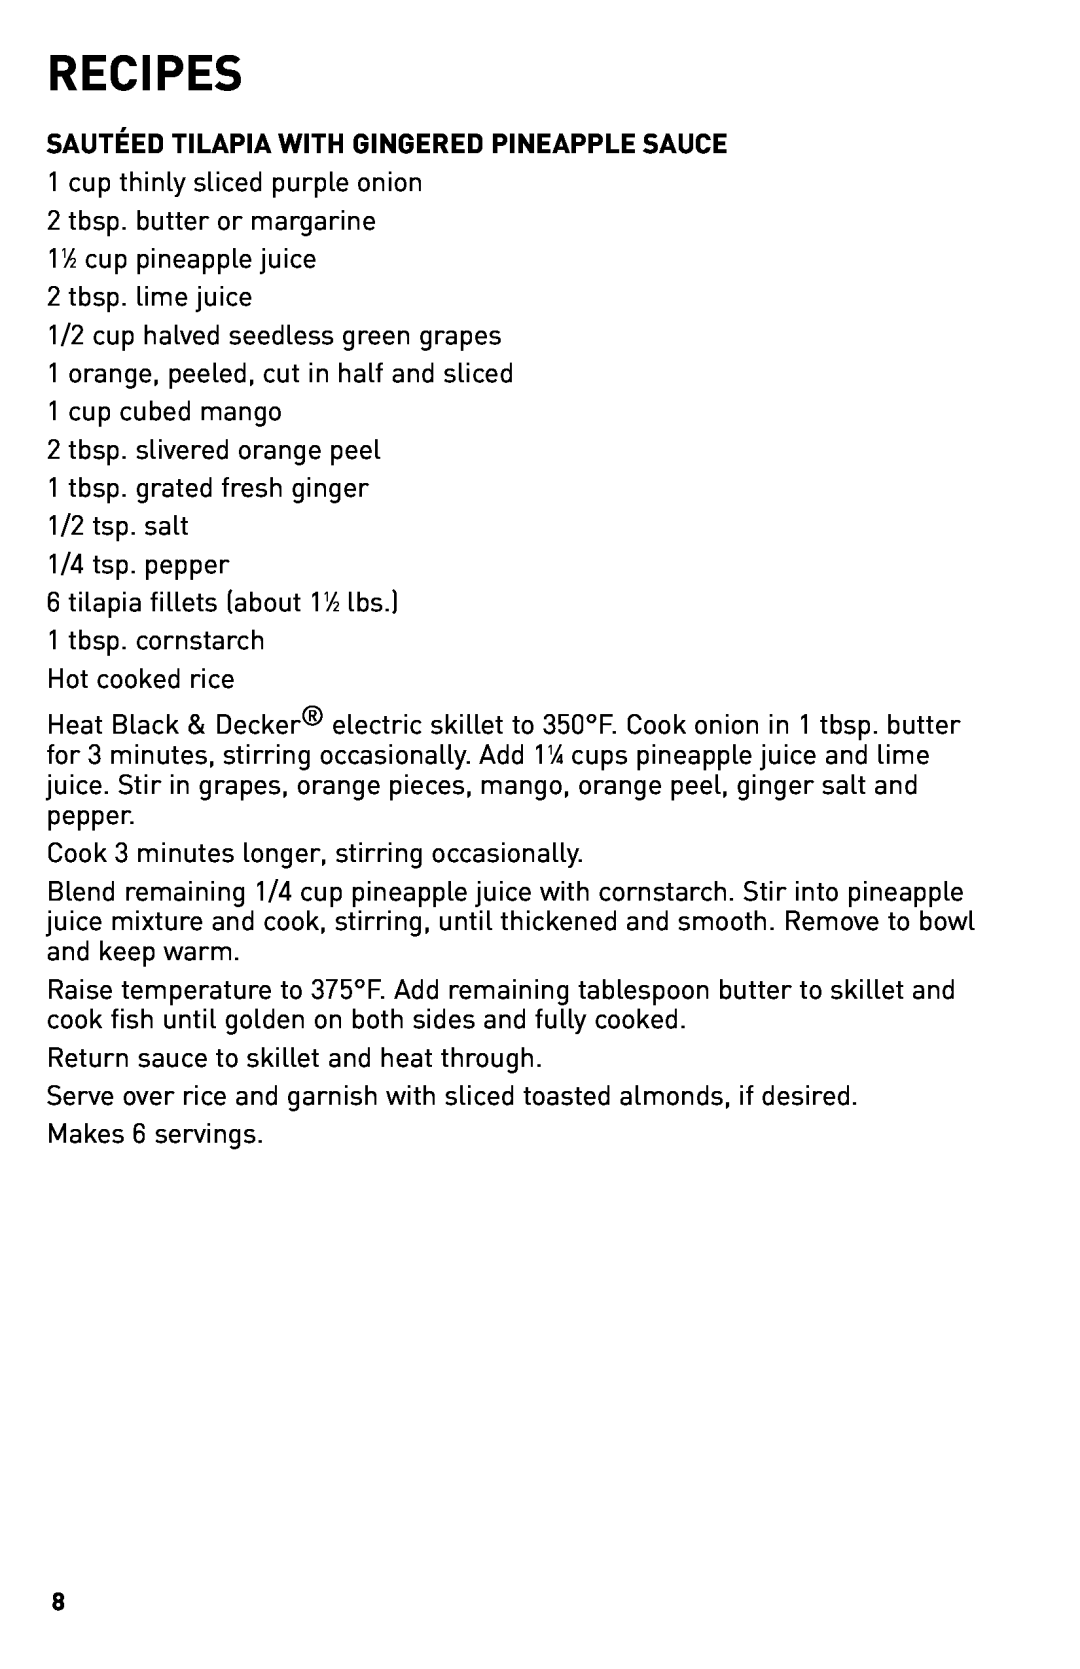 Black & Decker SKG110C manual Recipes 